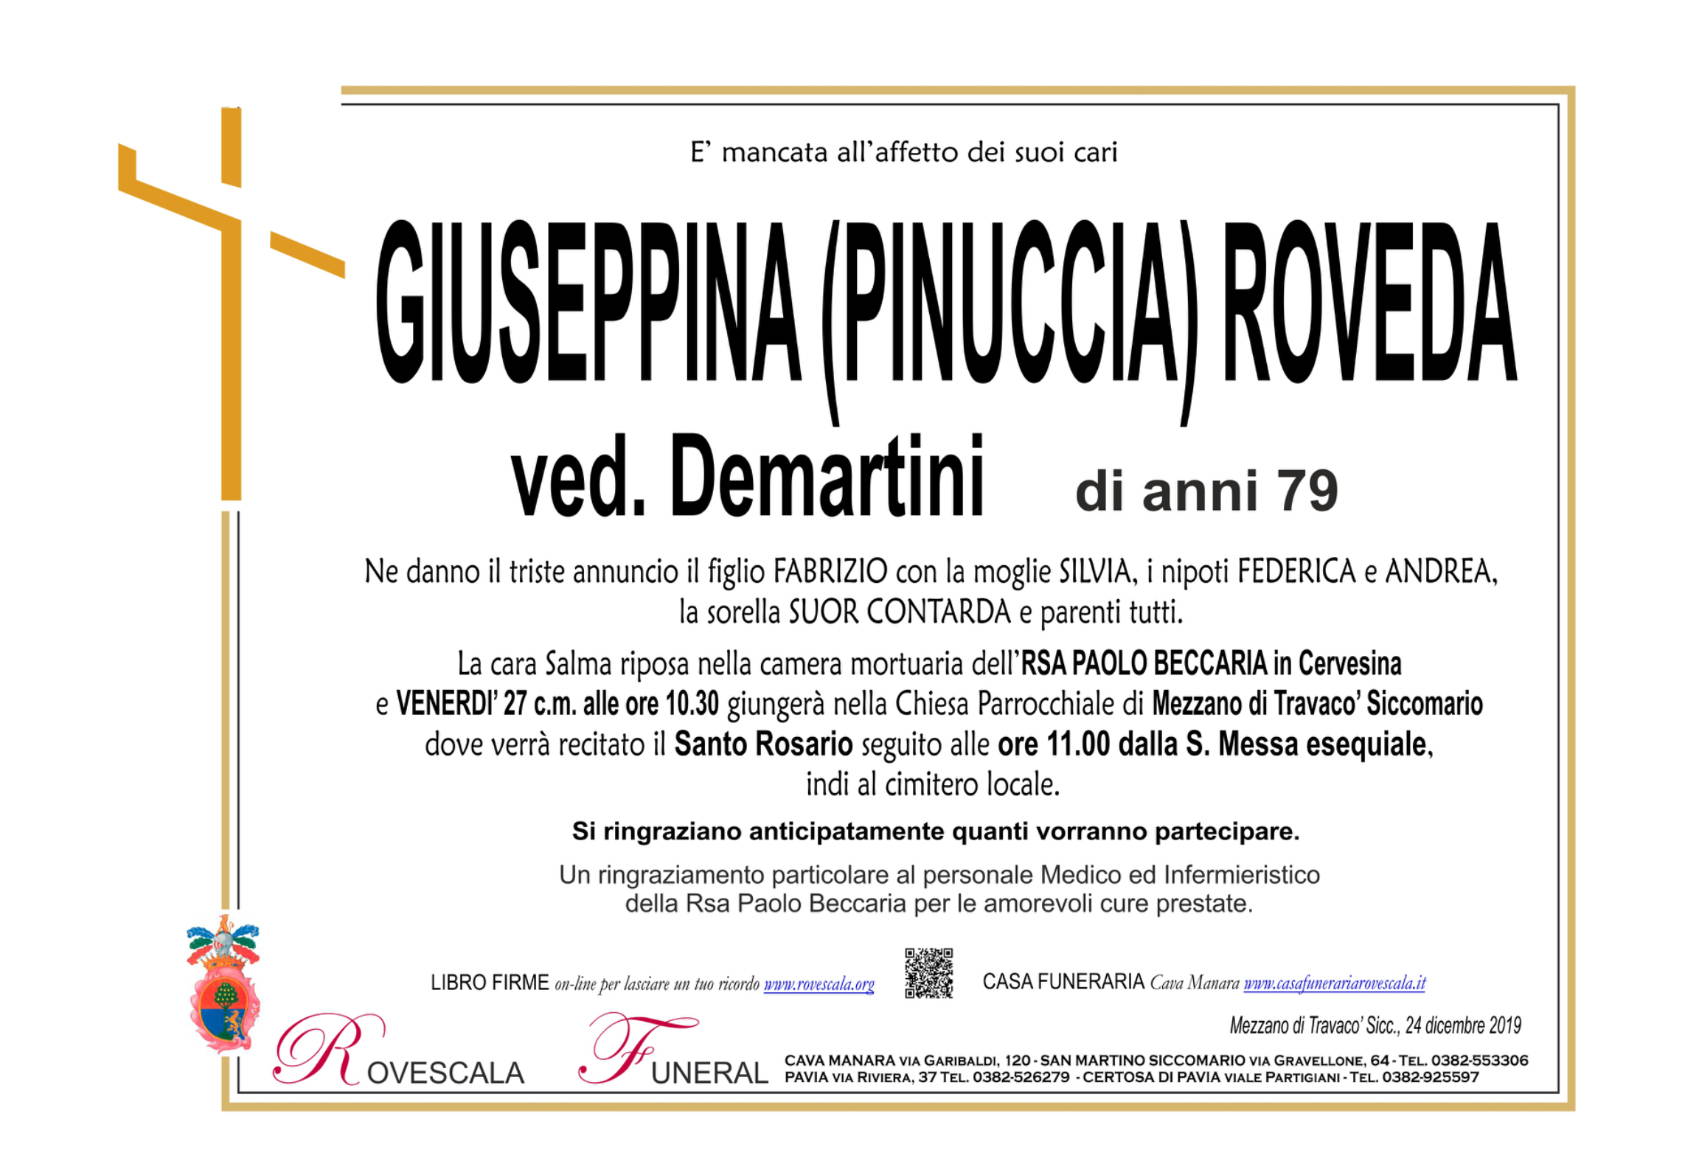 Giuseppina Pinuccia Roveda